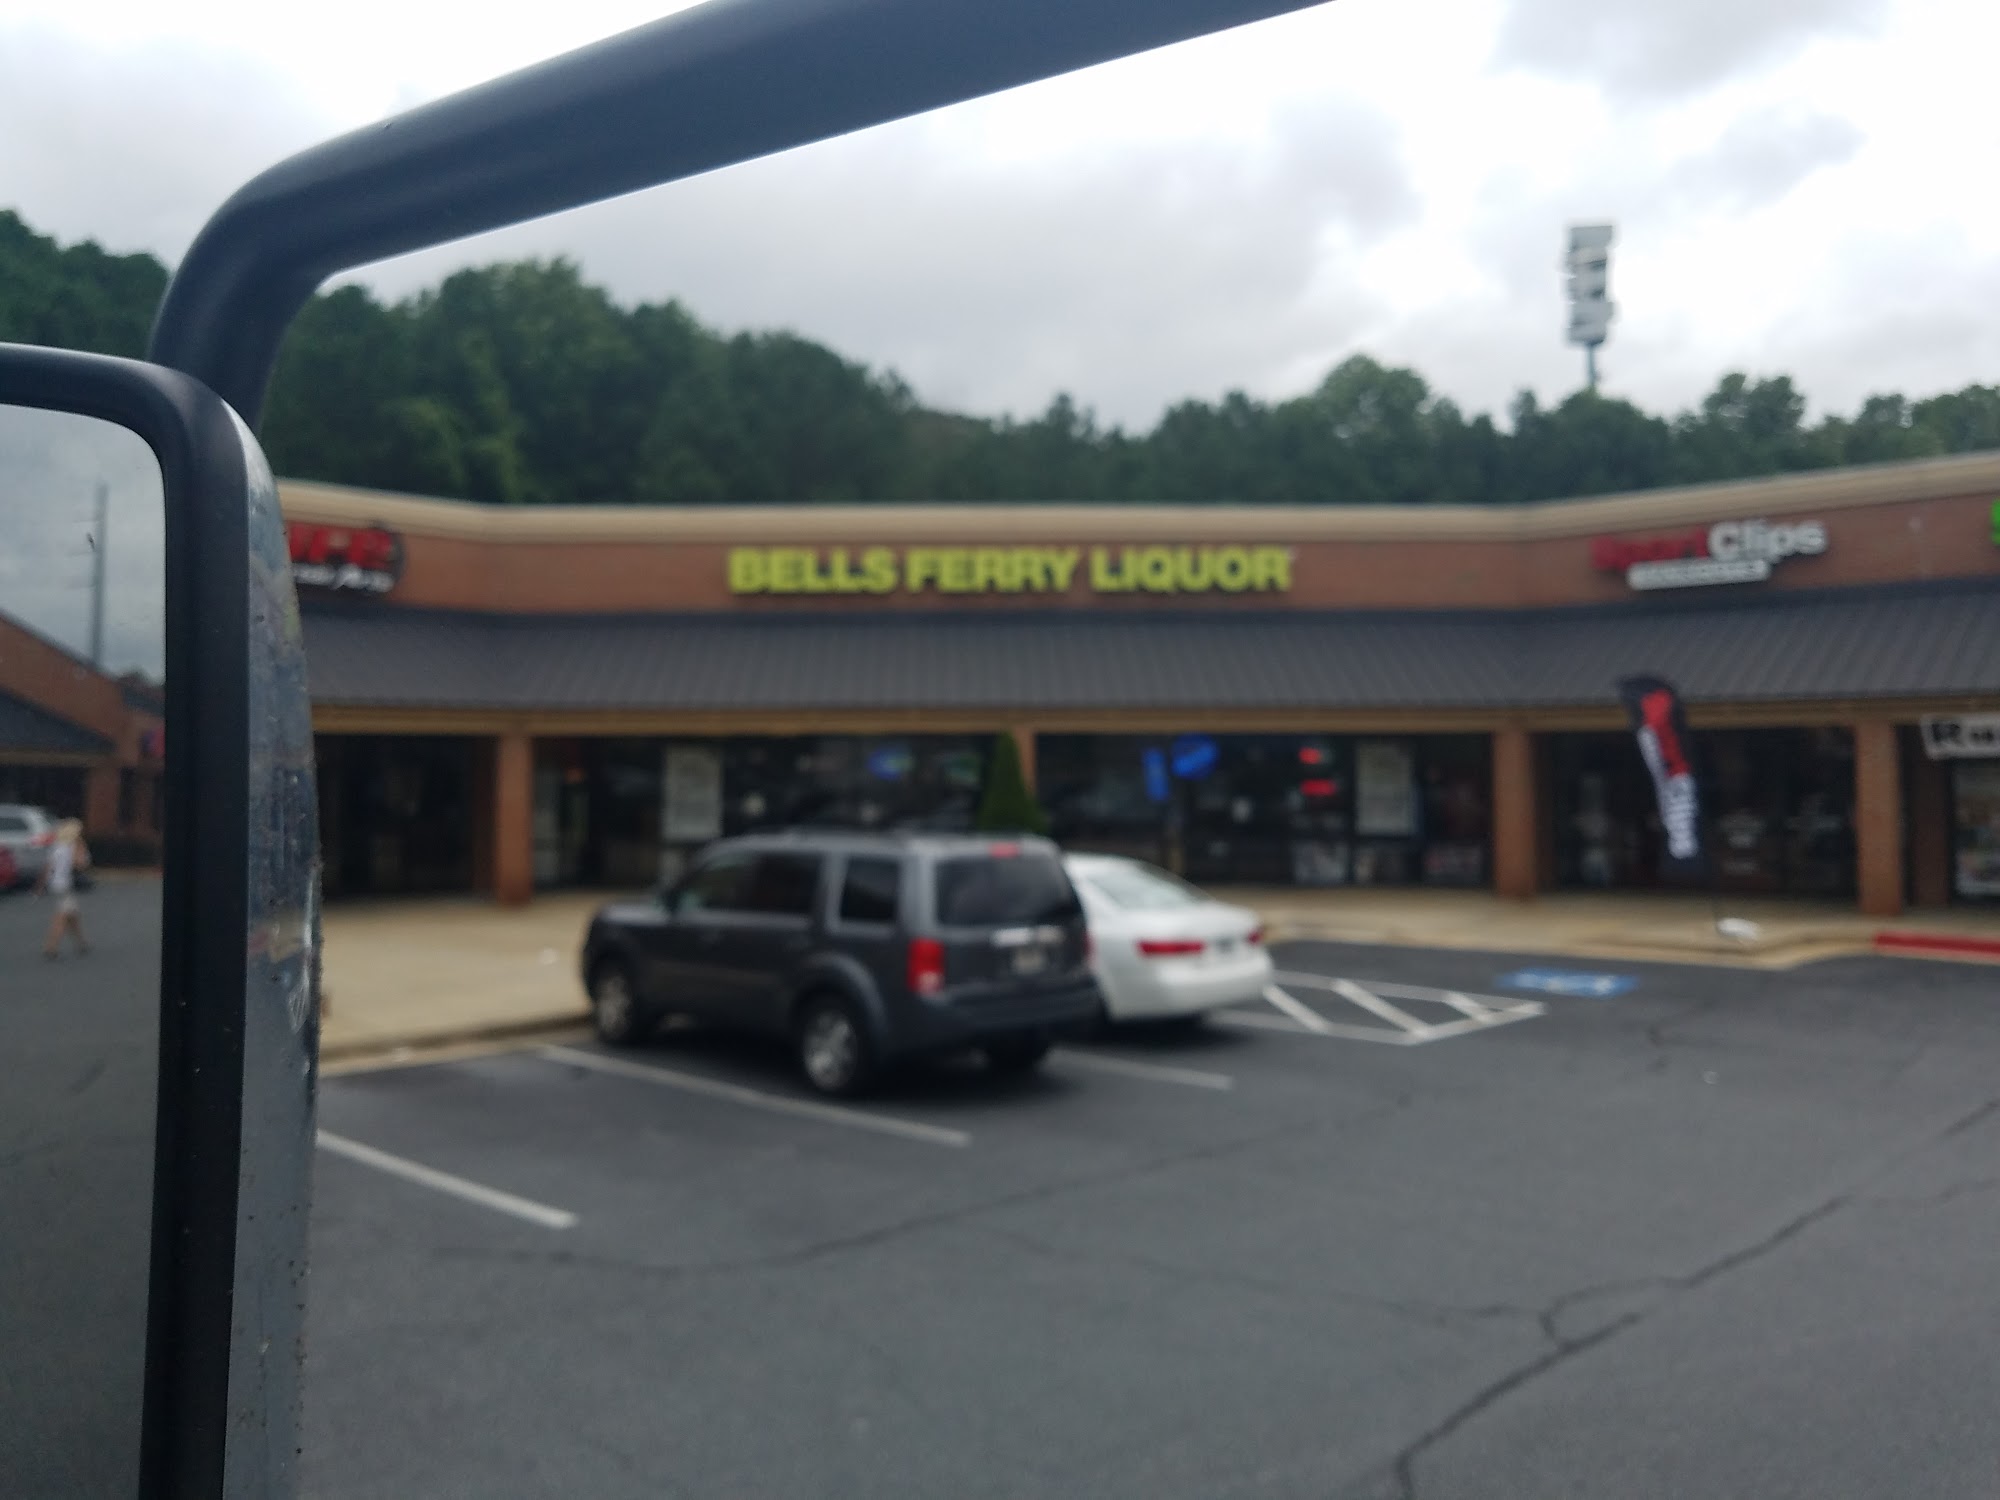 Bells Ferry Liquor Store